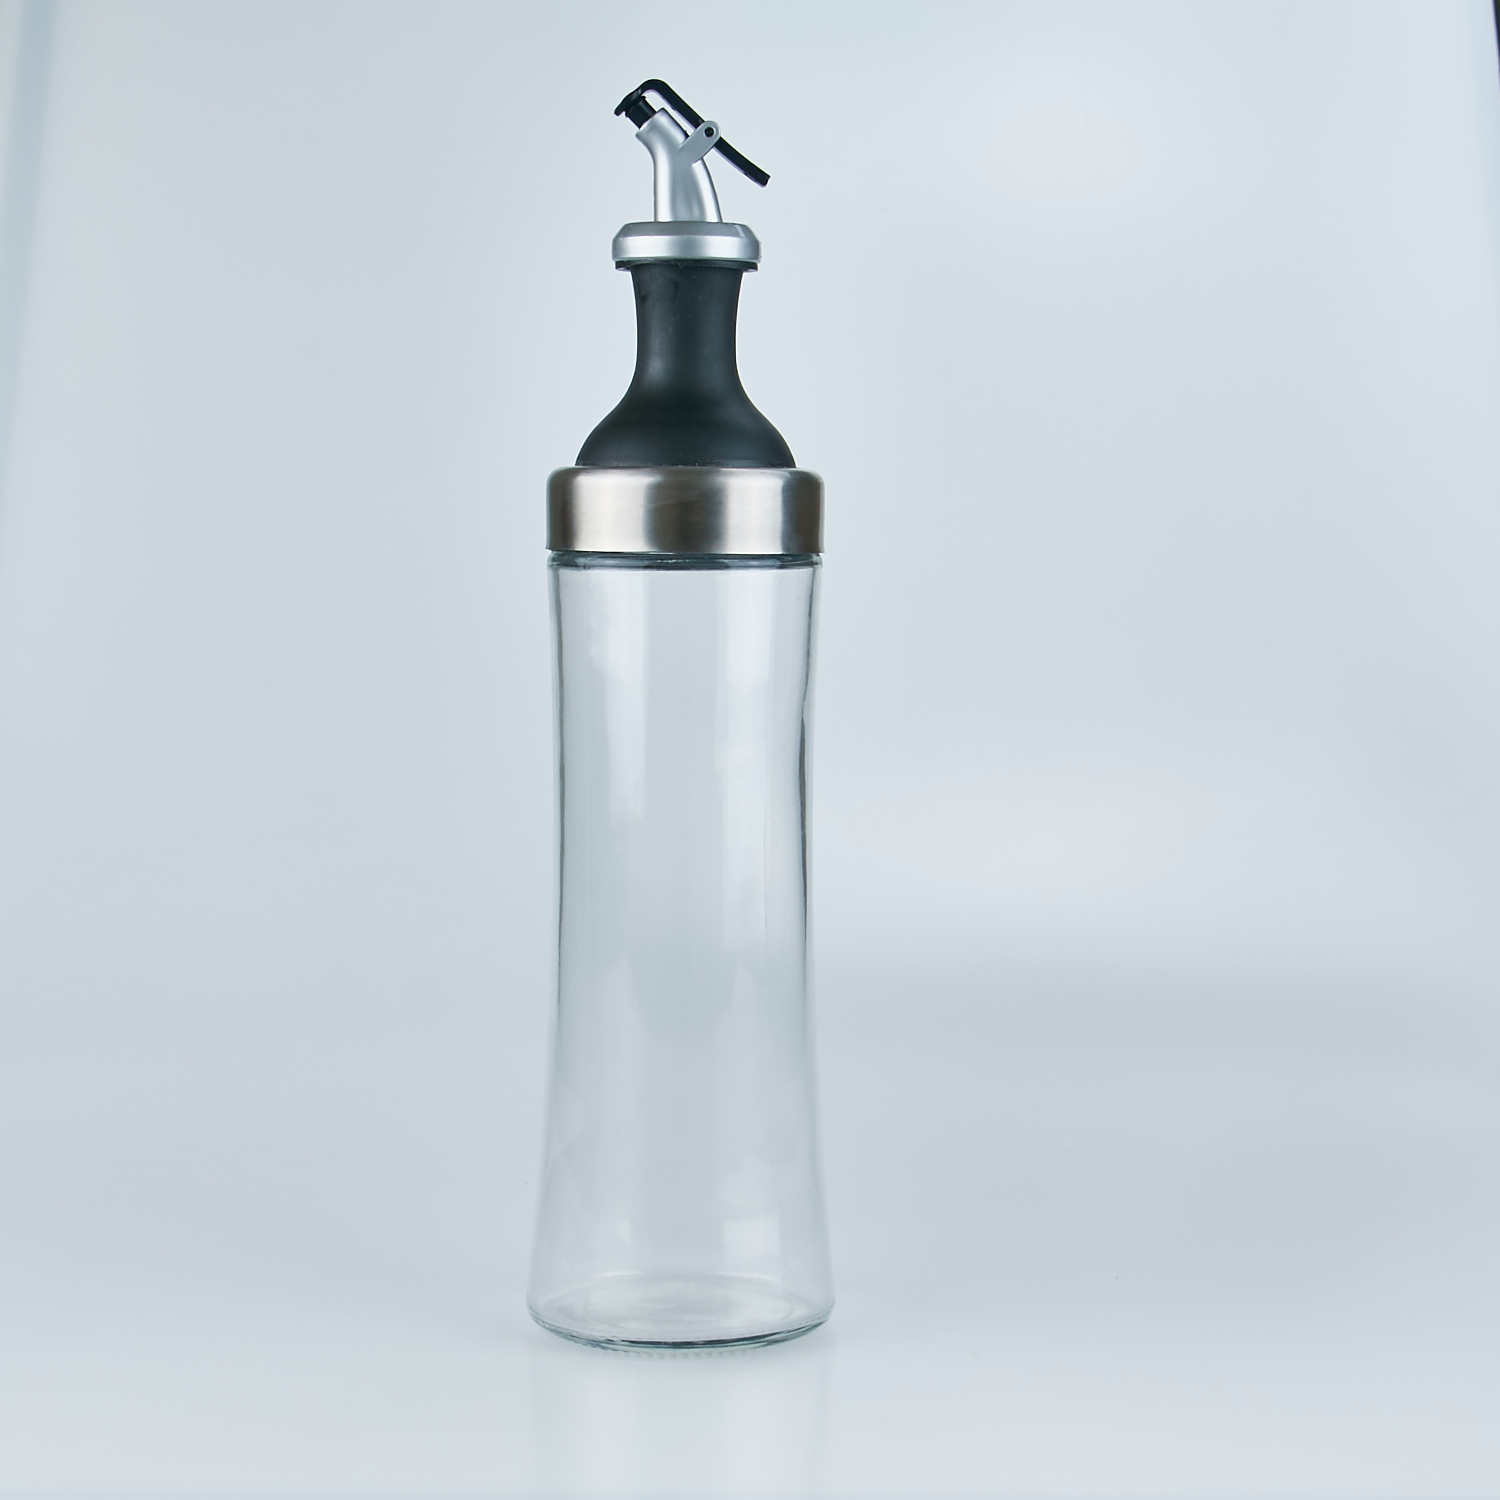 Edible olive oil sauce vinegar household seasoning bottle leak-proof kitchen vinegar pot 